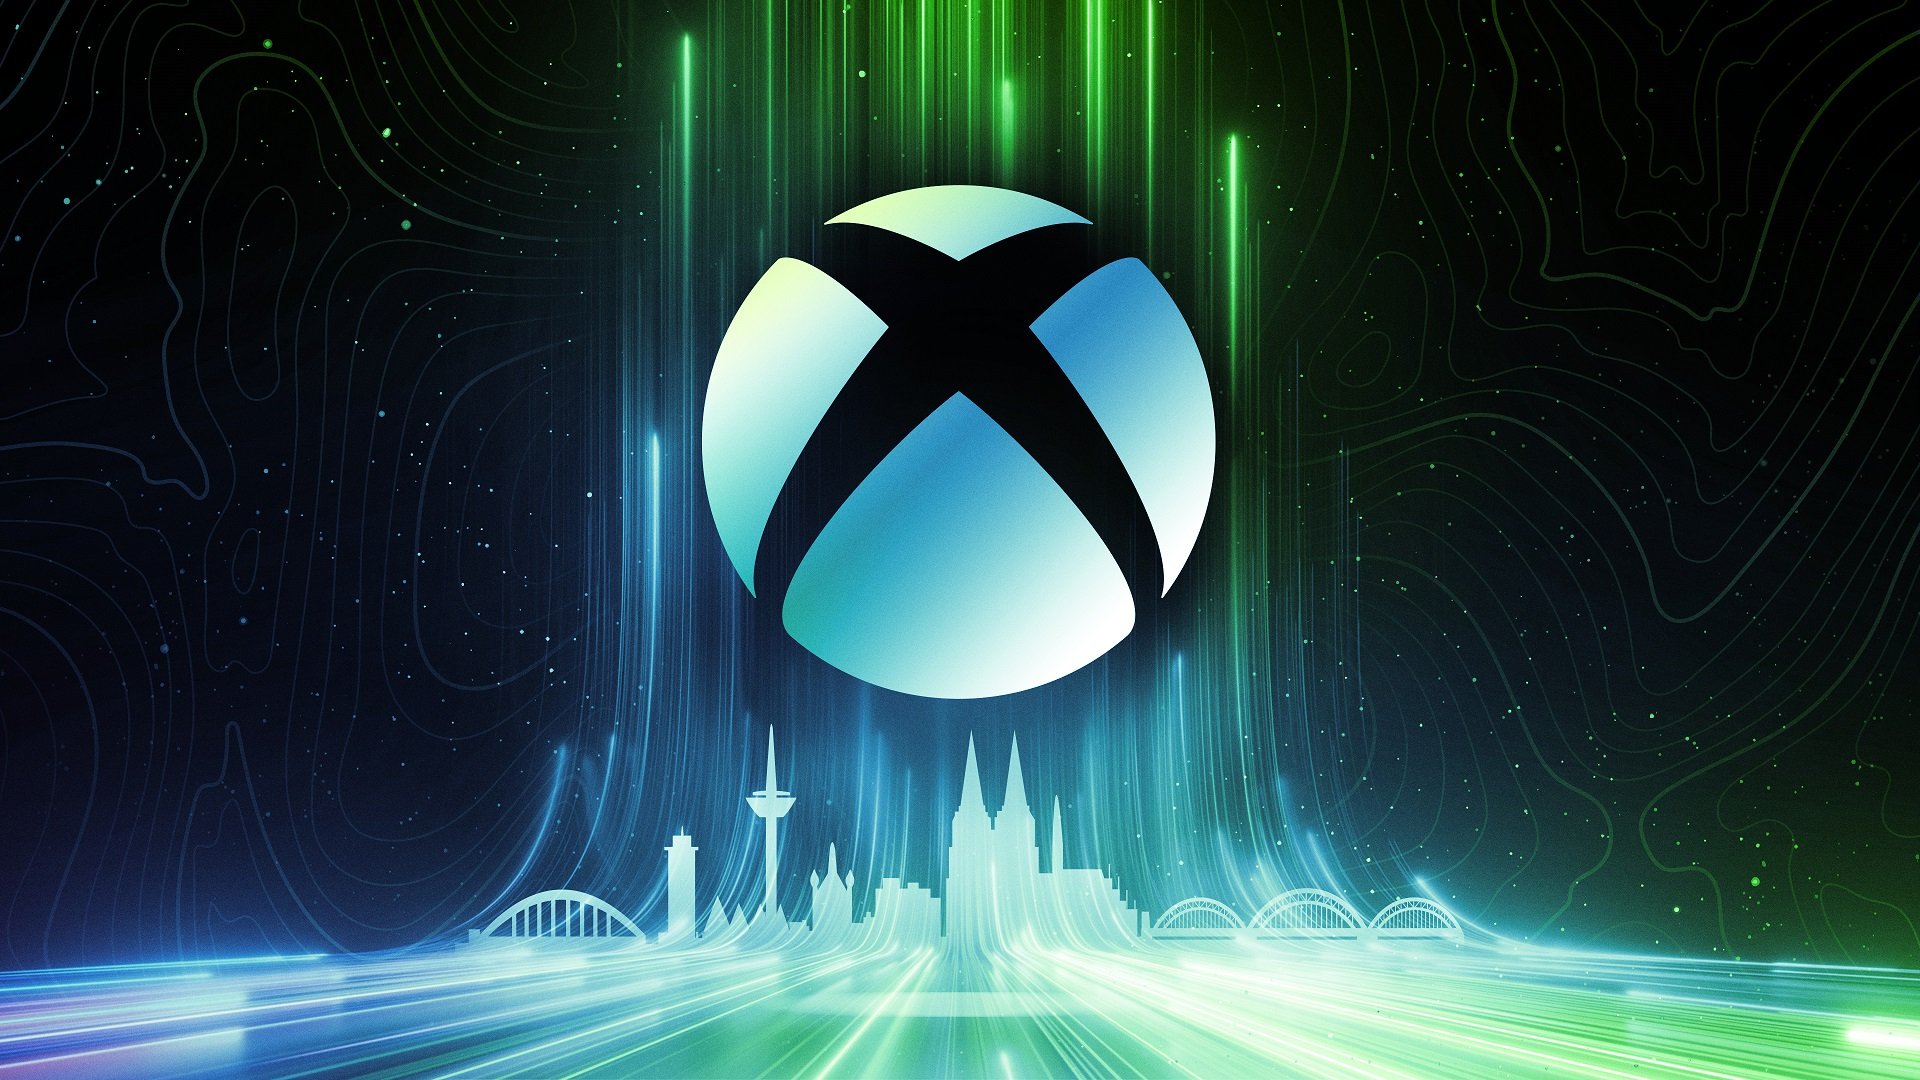 Xbox科隆展计划公开 现场可游玩《装甲核心6》《潜行者2》